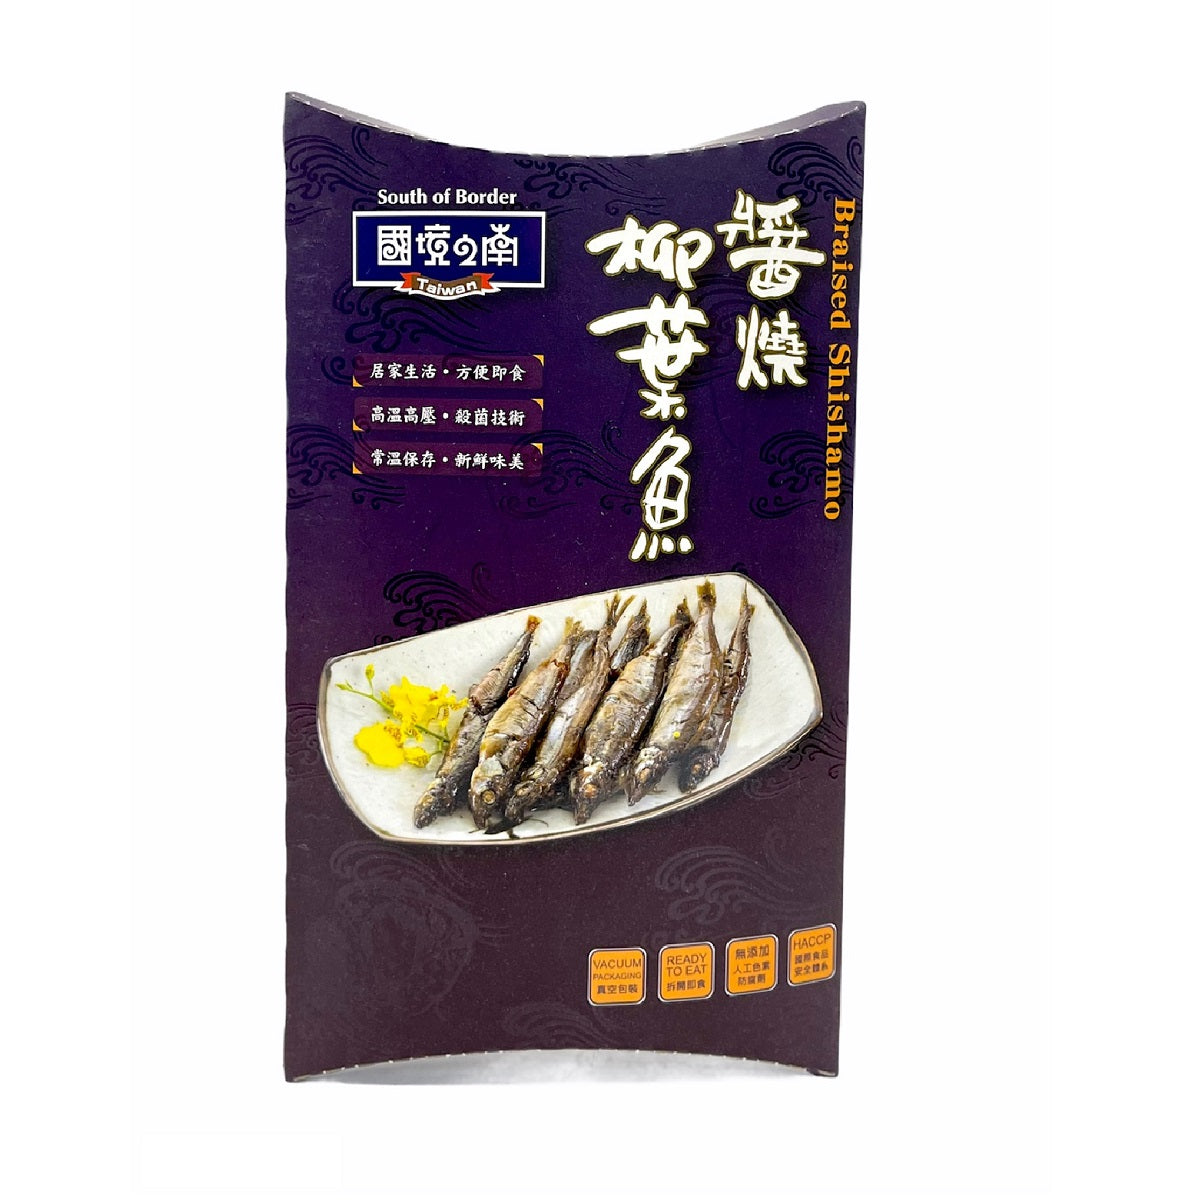 得意中華 國境之南 D.E CHUNG HUA 醬燒柳葉魚 120g